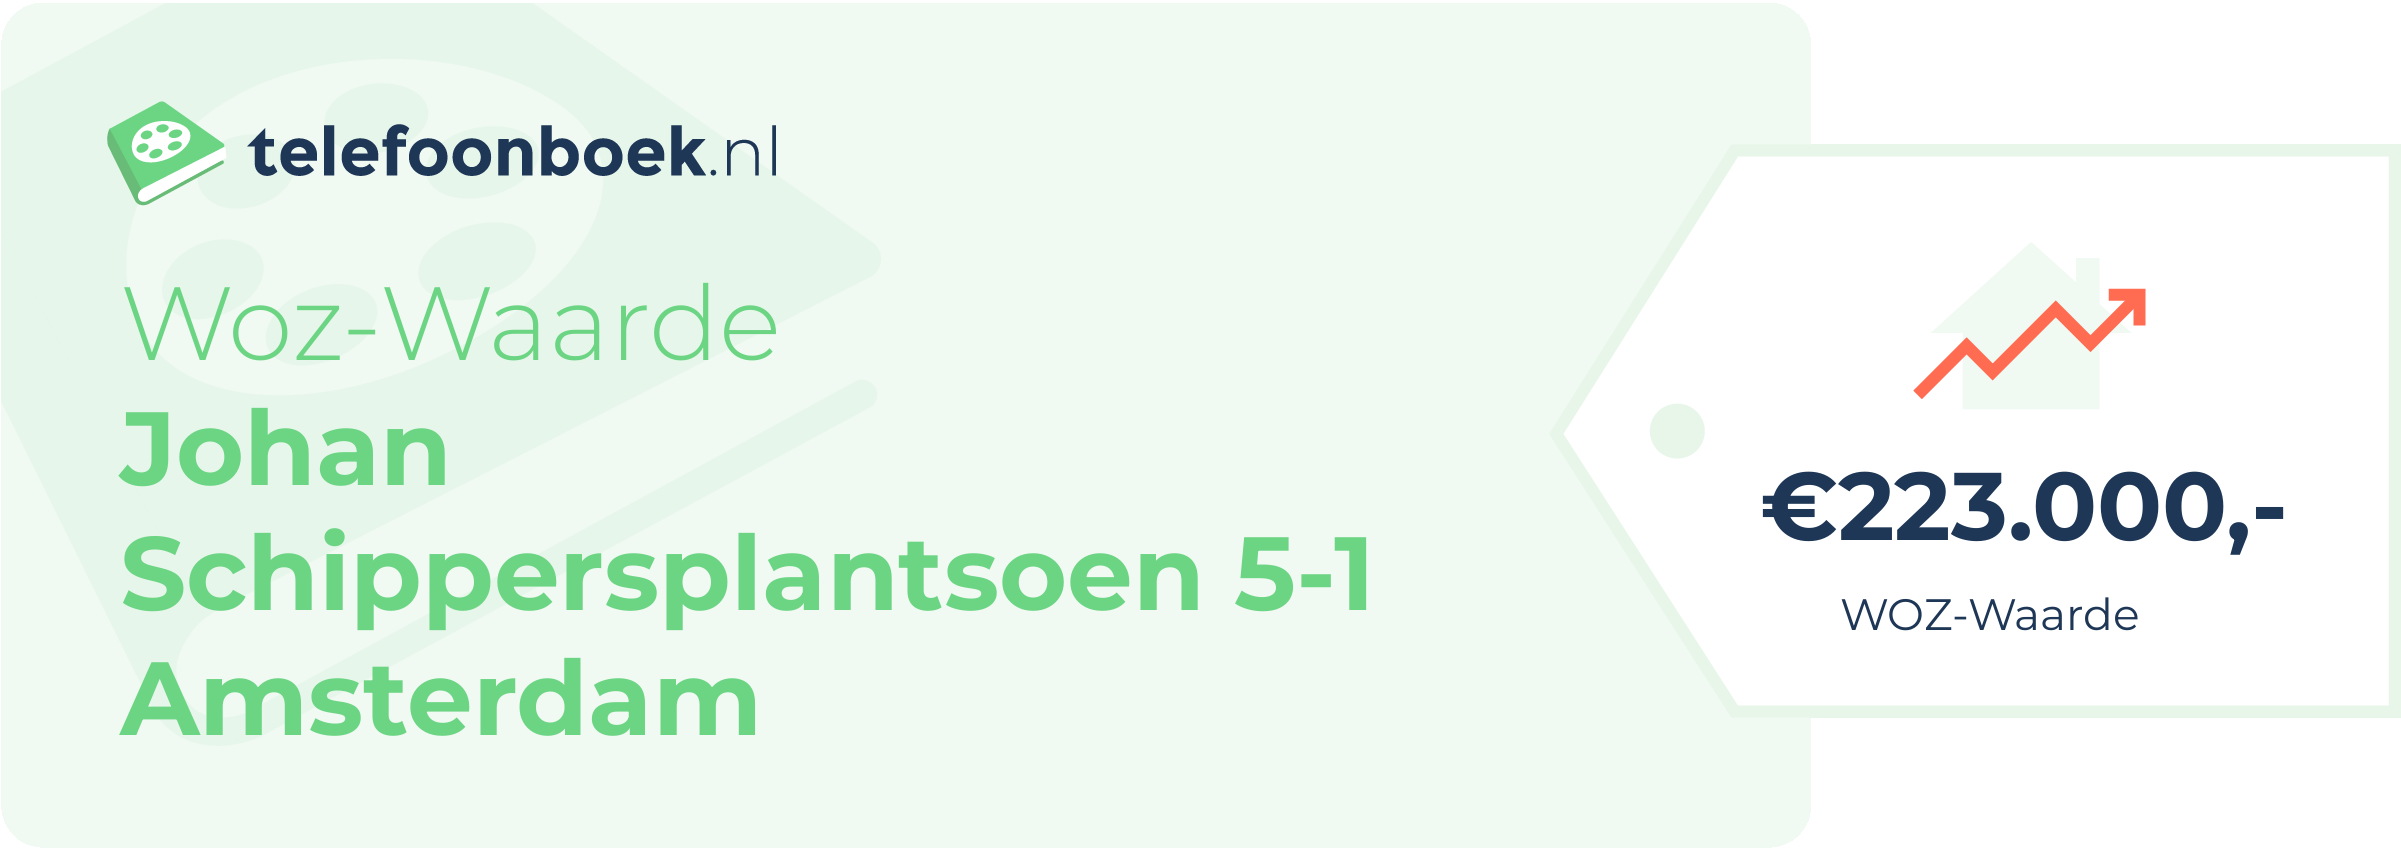 WOZ-waarde Johan Schippersplantsoen 5-1 Amsterdam